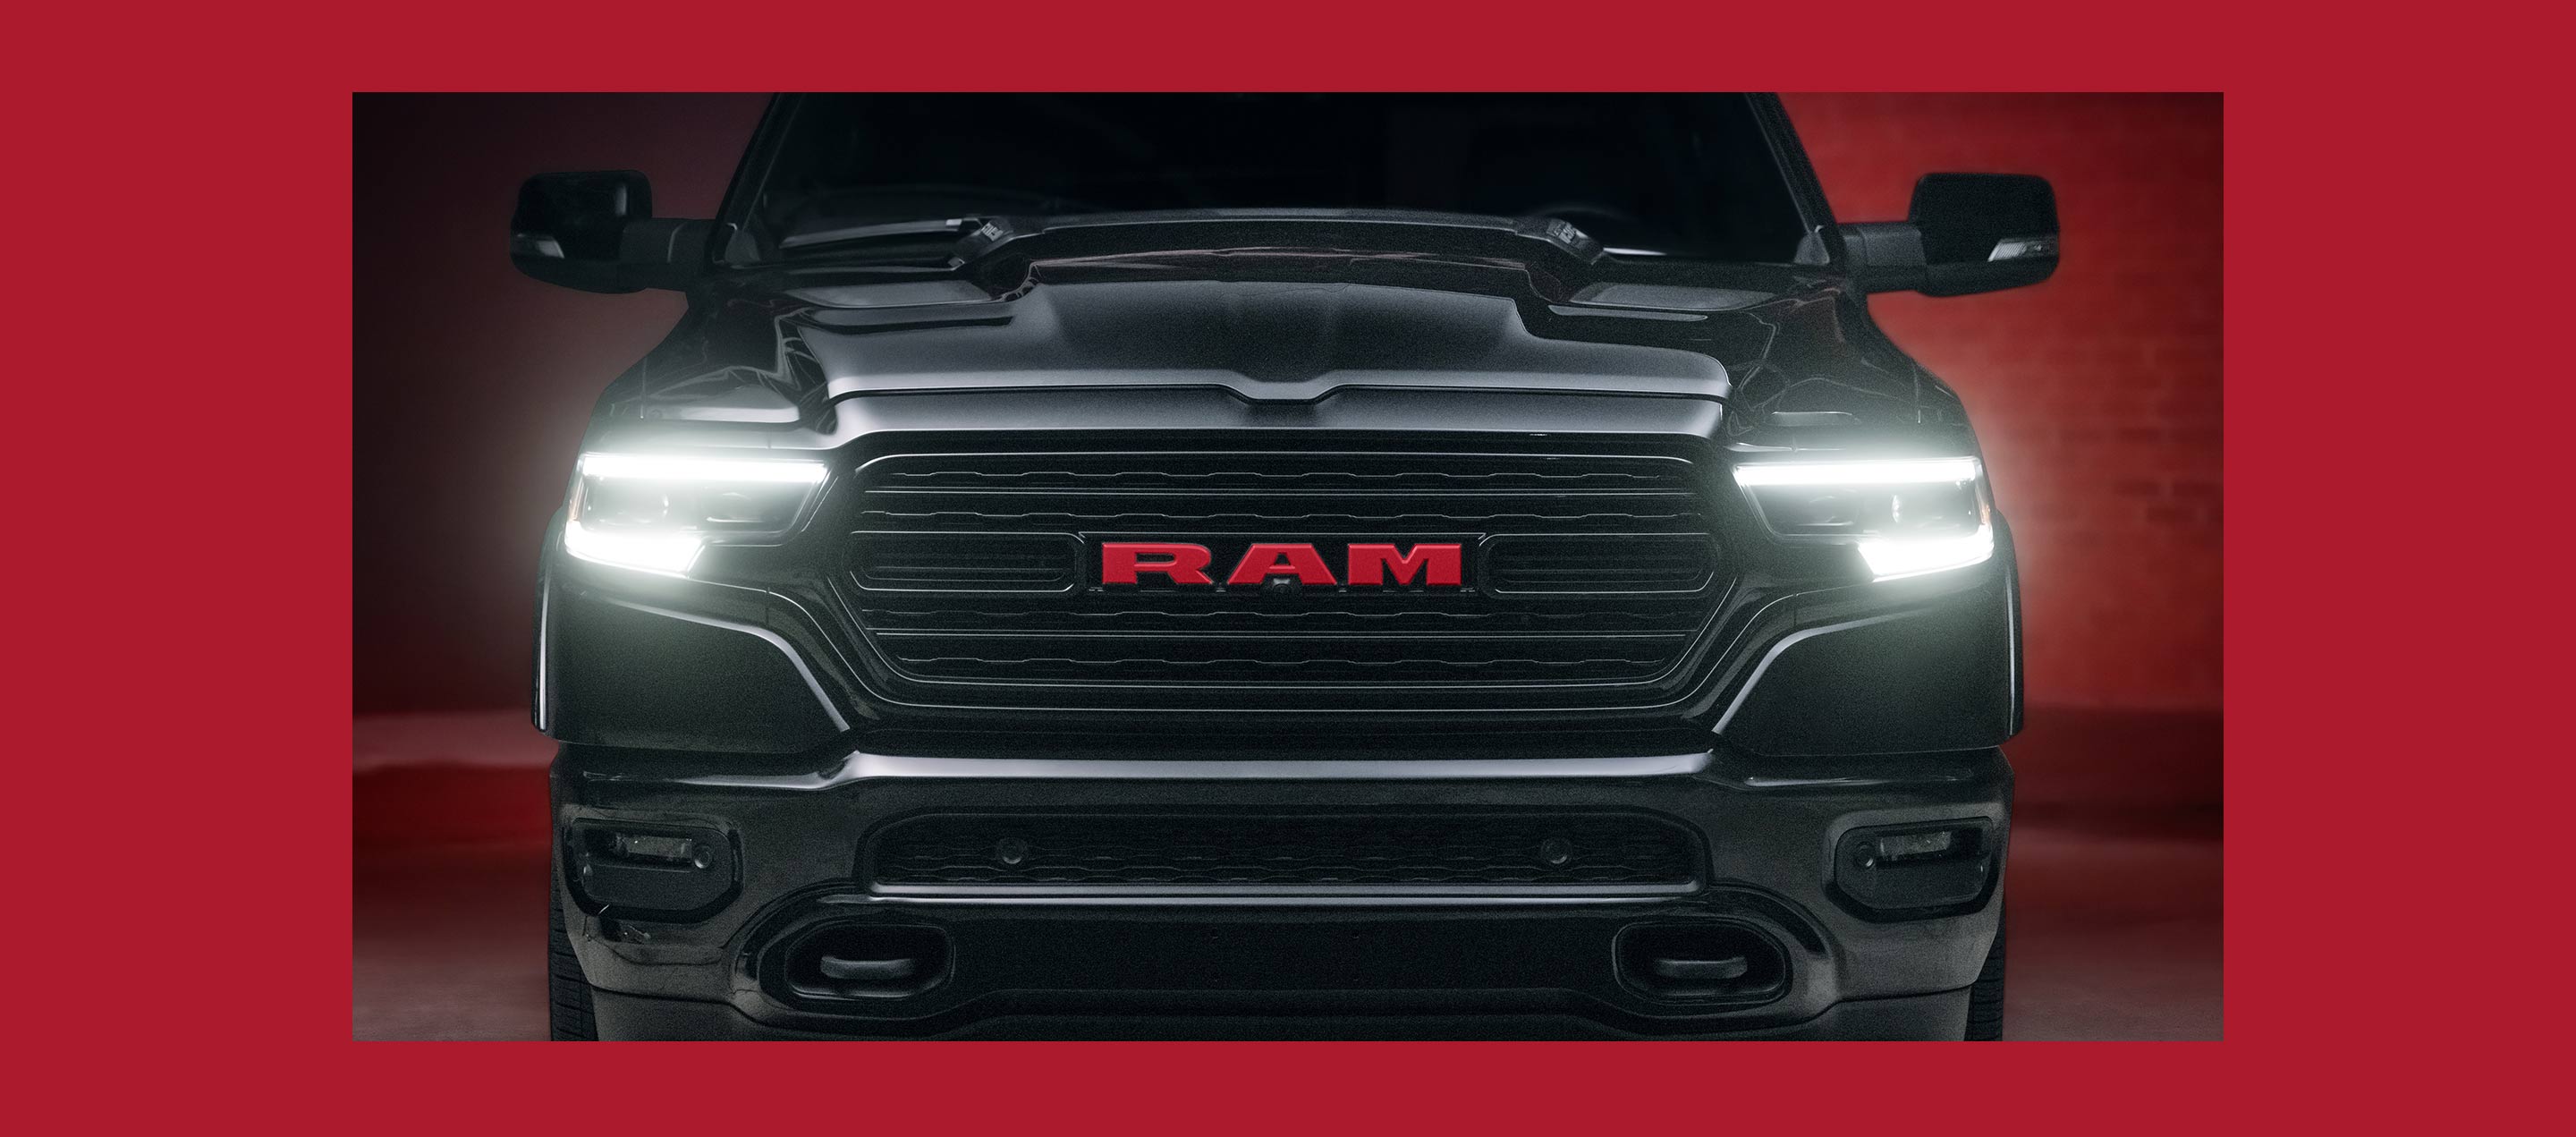 Primer plano de la parte delantar de una Ram 1500 Limited Ram Red Edition 2023 con sus faros delanteros encendidos.